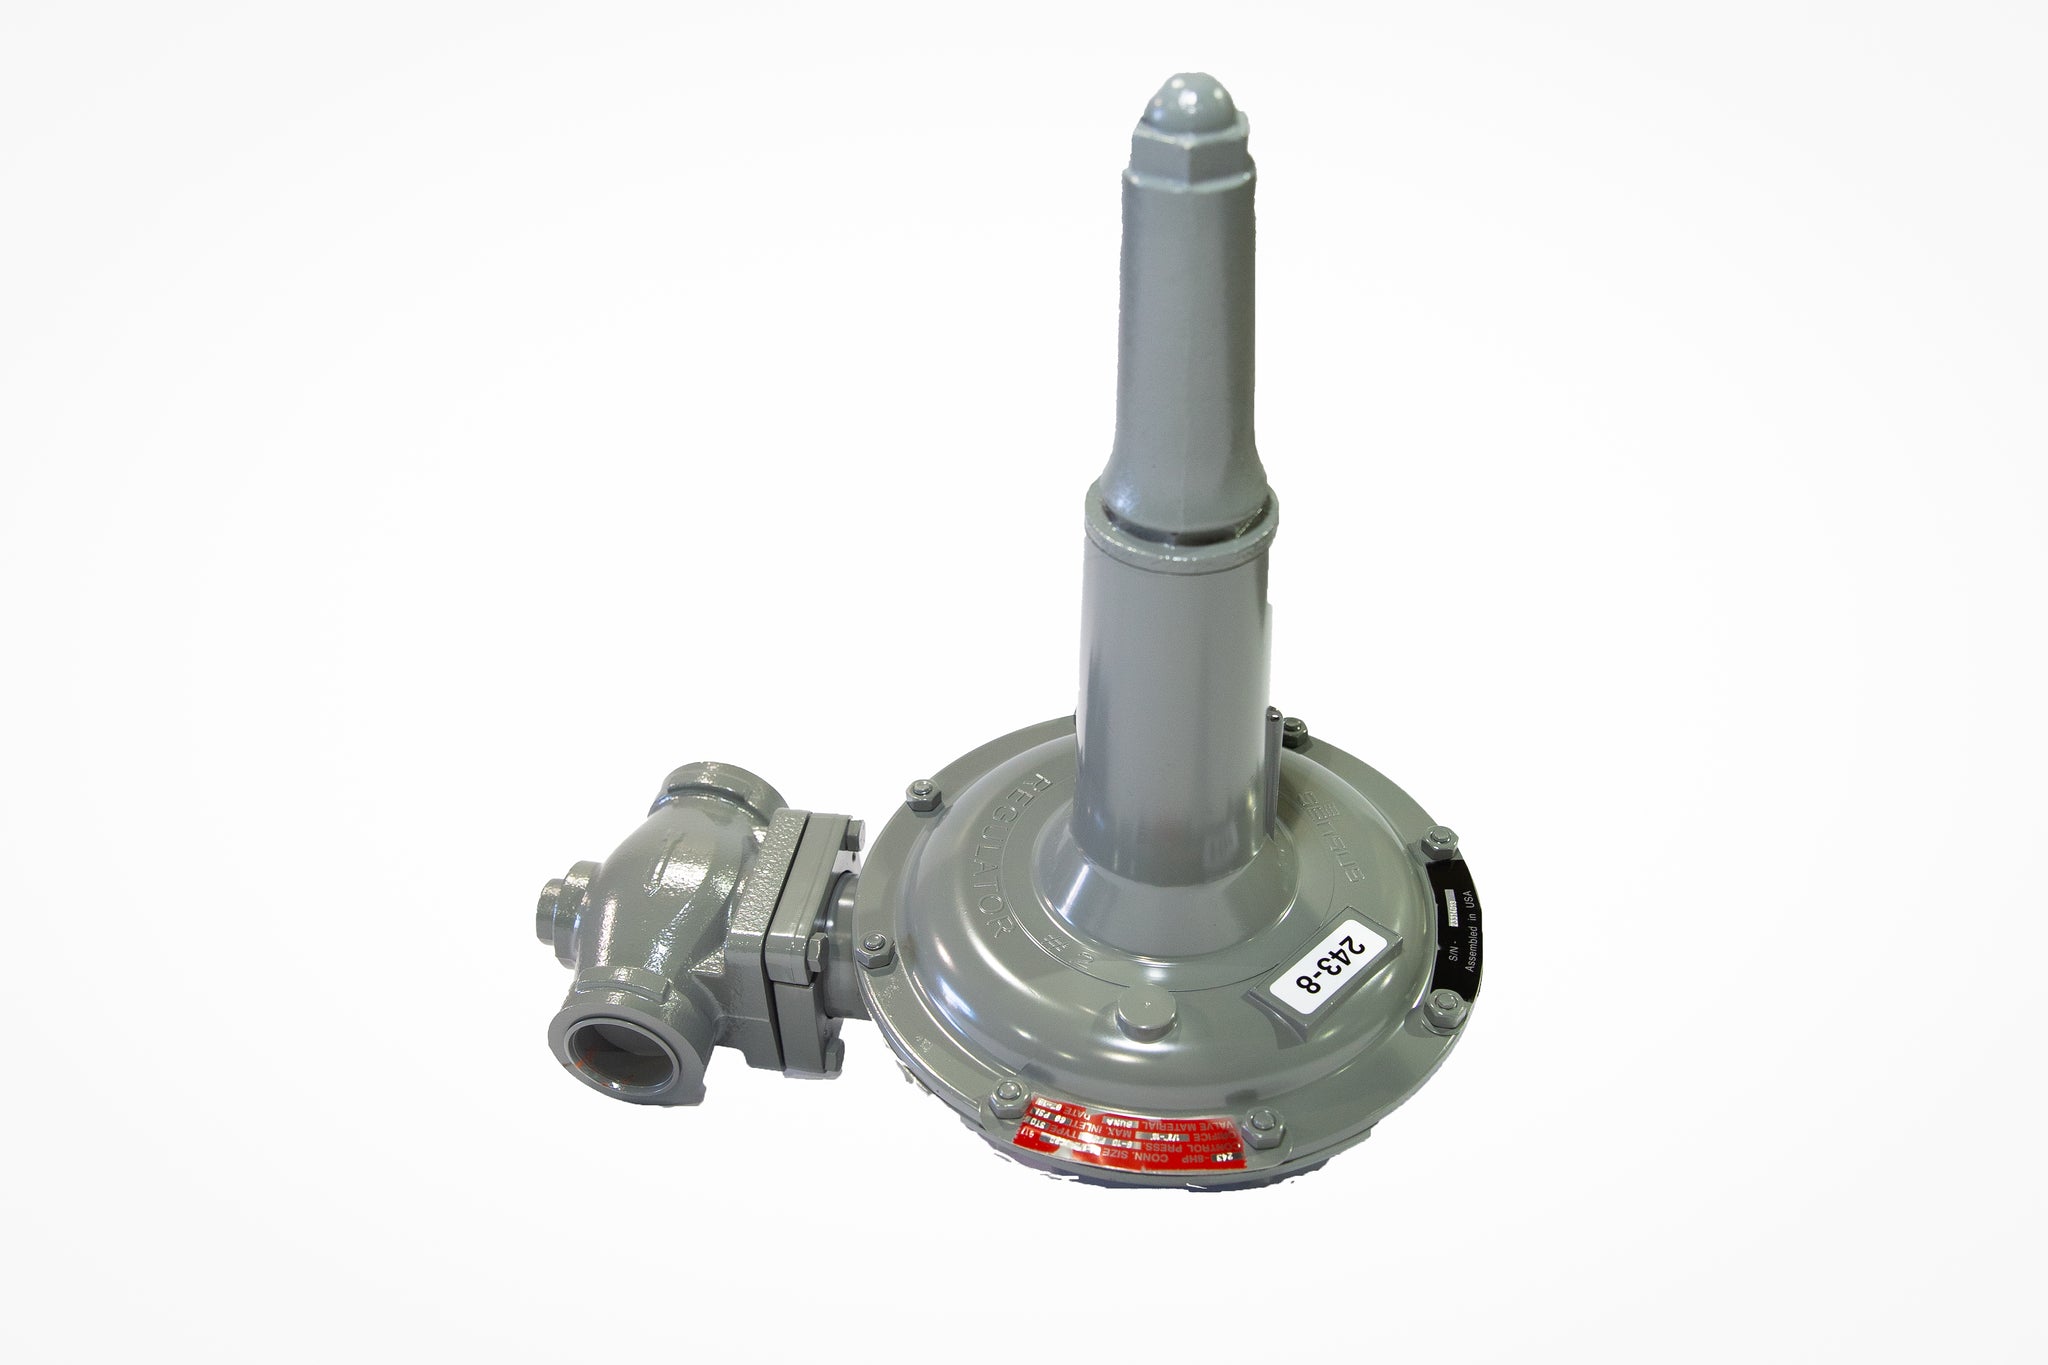 Sensus 243-8HP, 1-1/2"NPT gas regulator w/ 3/8" orifice, Cadmium spring(3-6.5 PSIG)